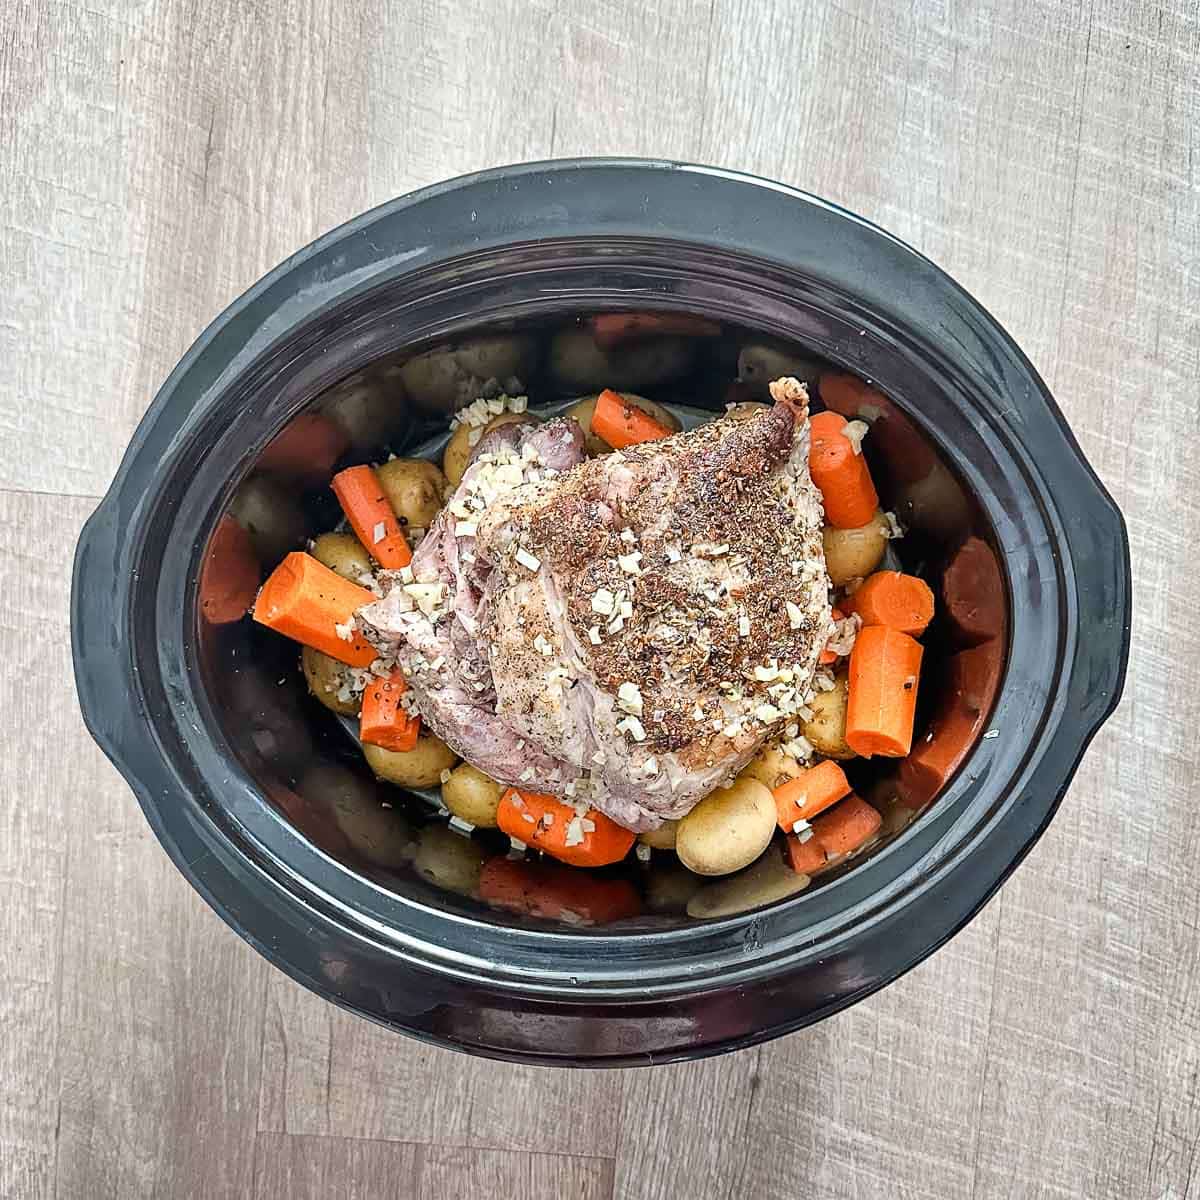 A crock pot full of pork roast, potatoes, carrots, and cooking liquid.